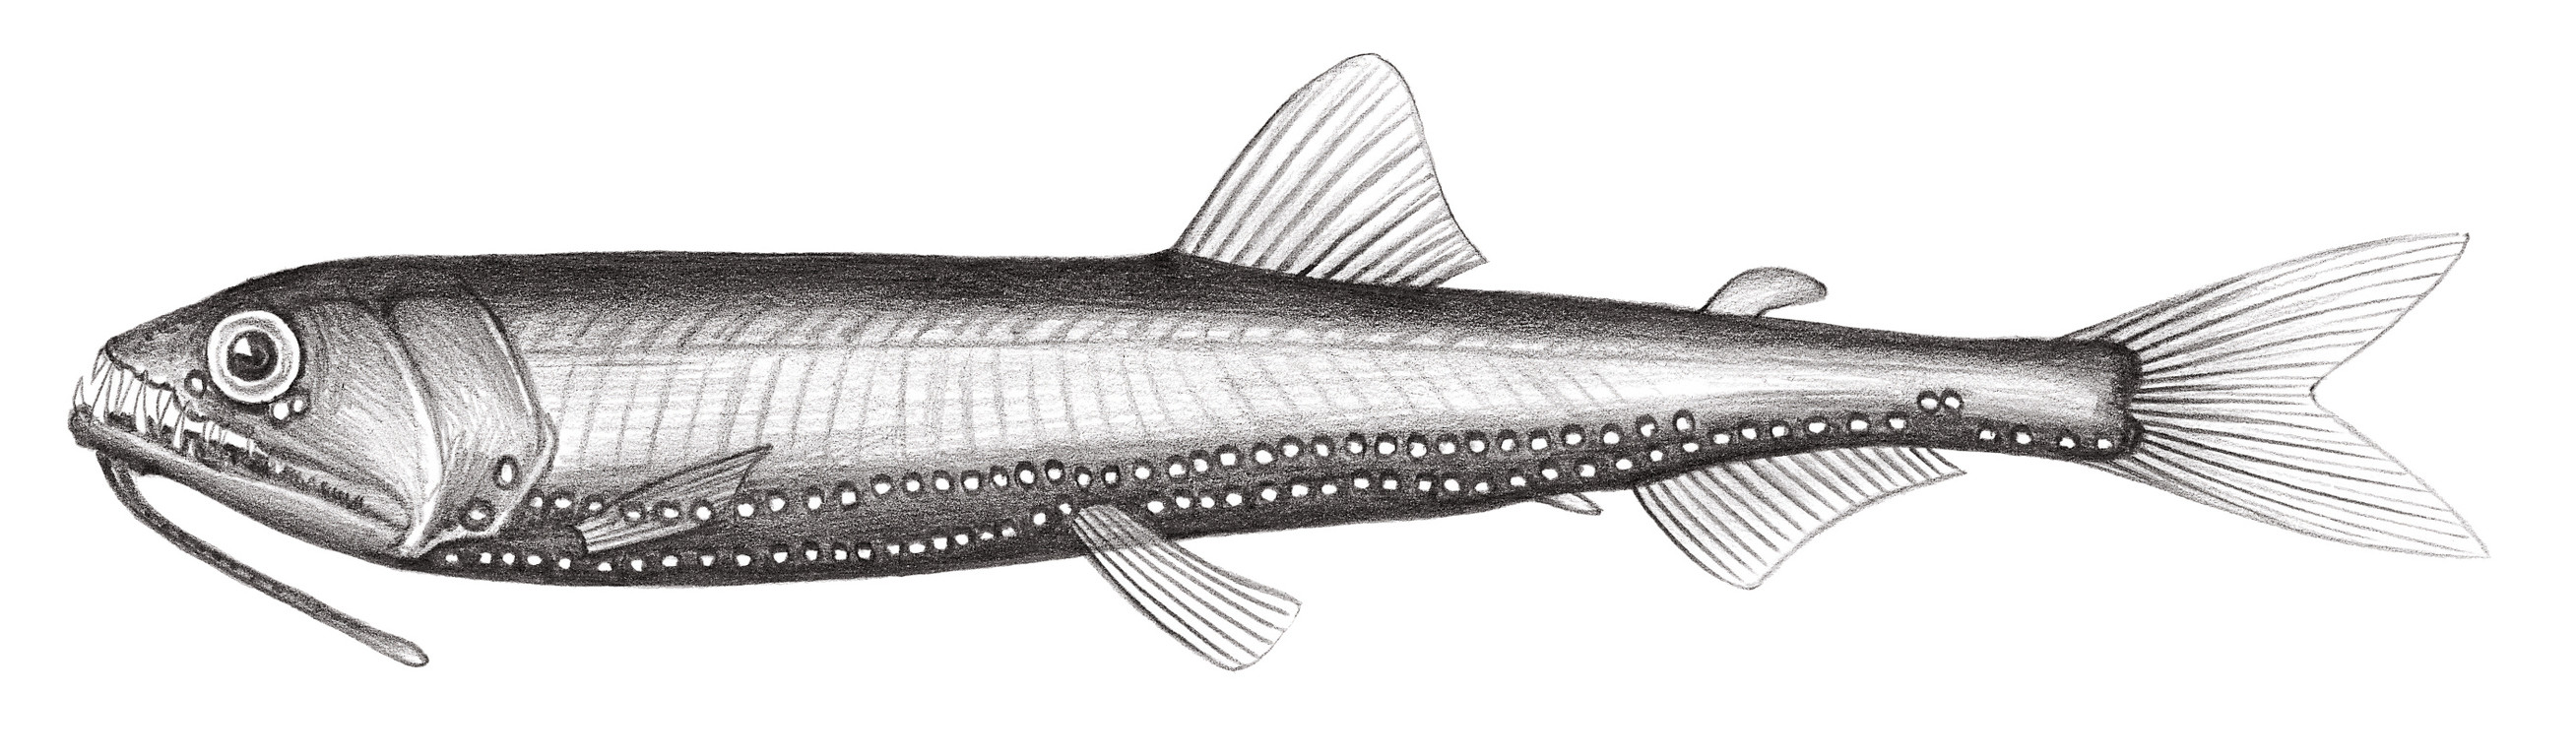 428.	金食星魚 Astronesthes chrysophekadion (Bleeker, 1849)